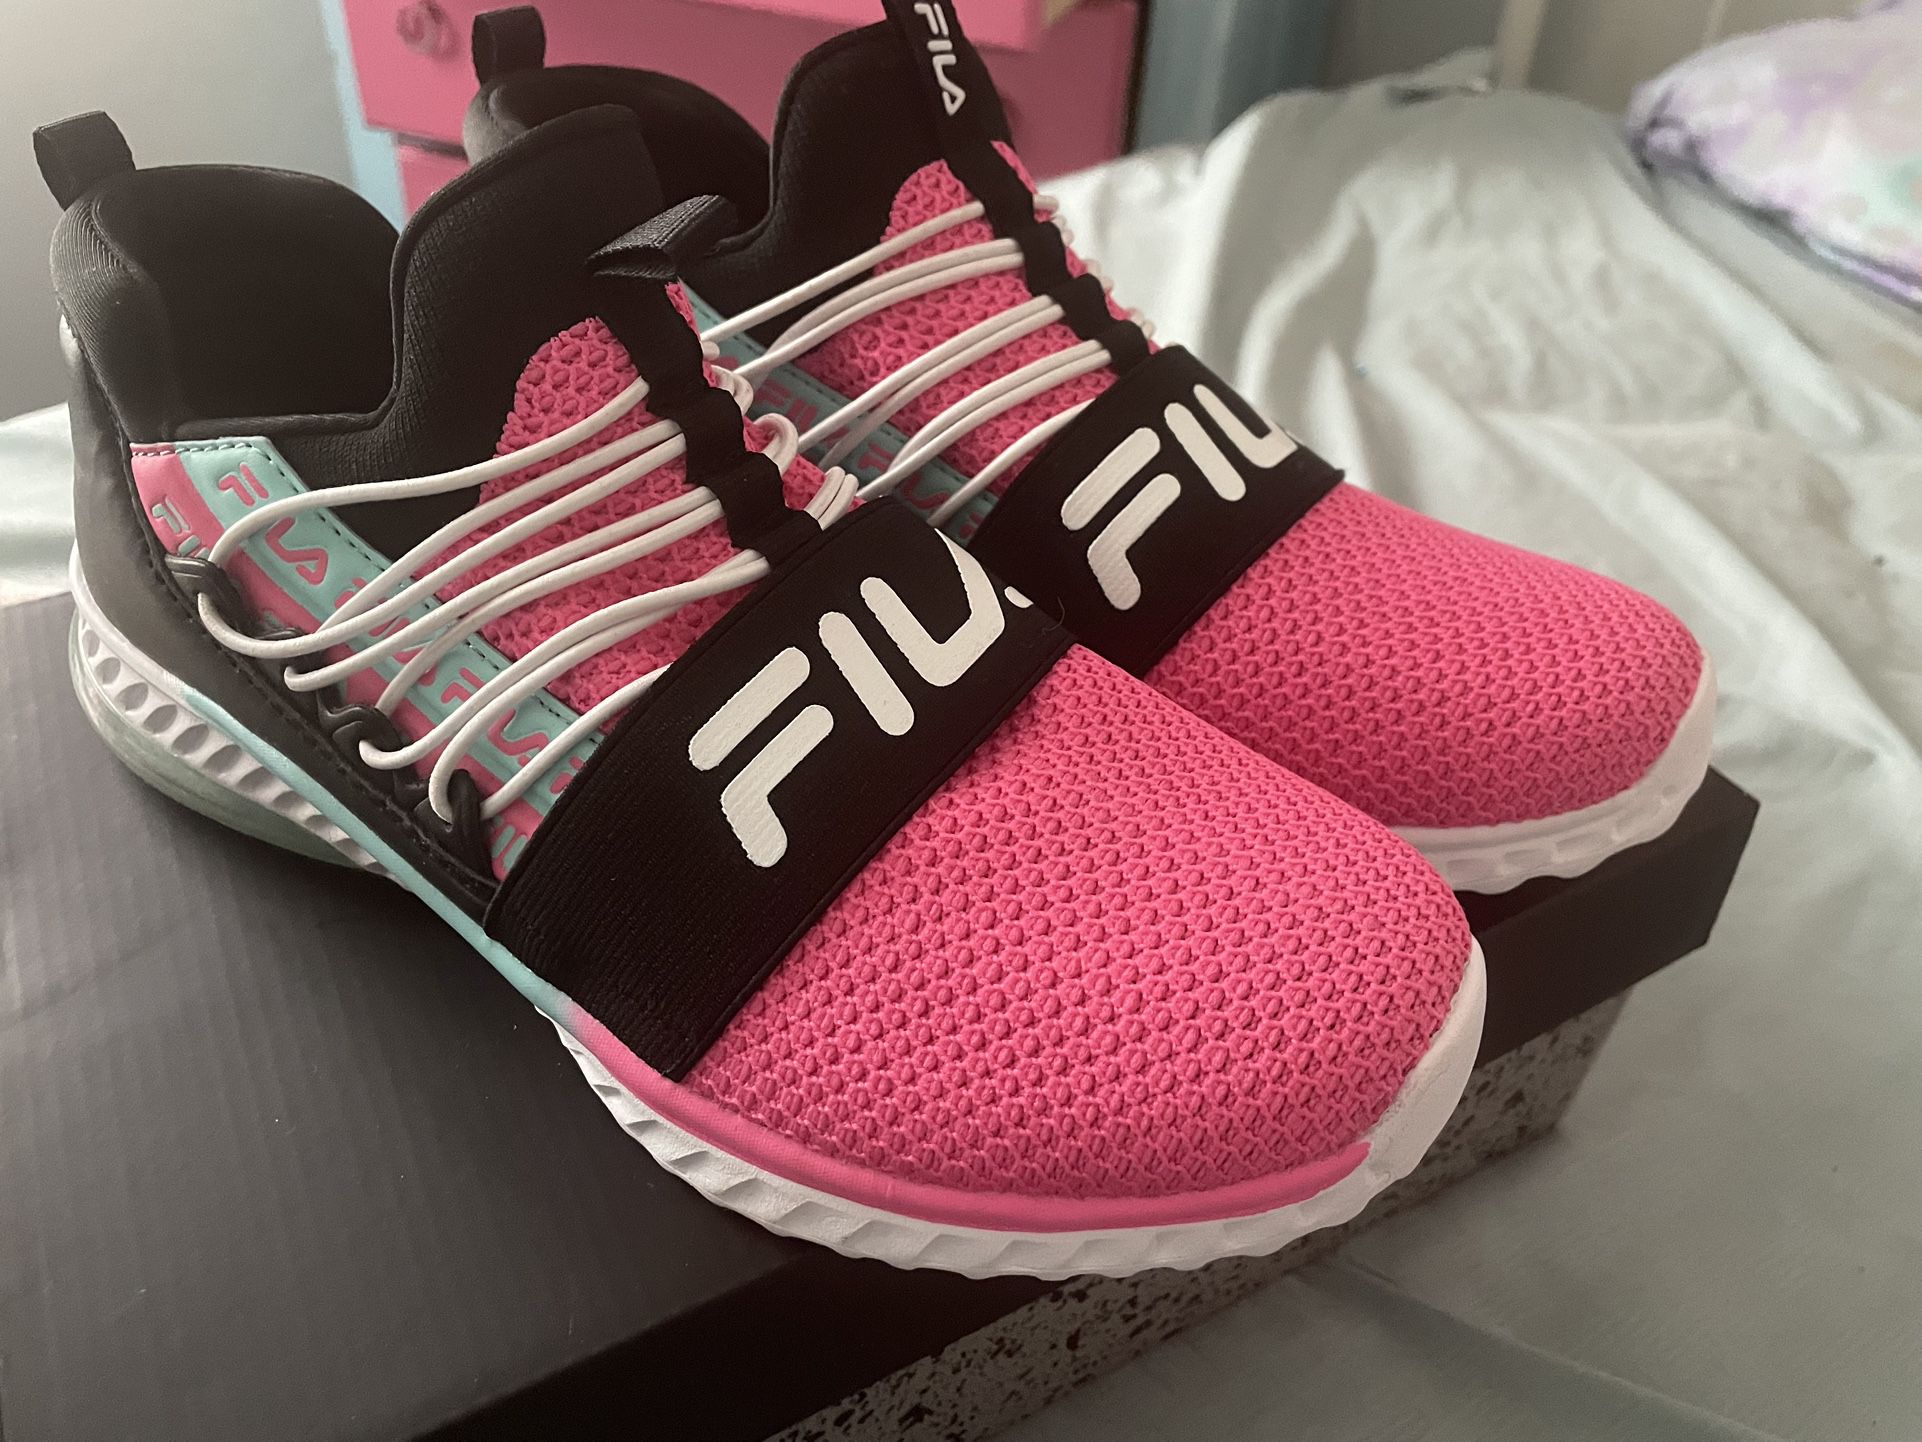 New Black & Pink Sneakers